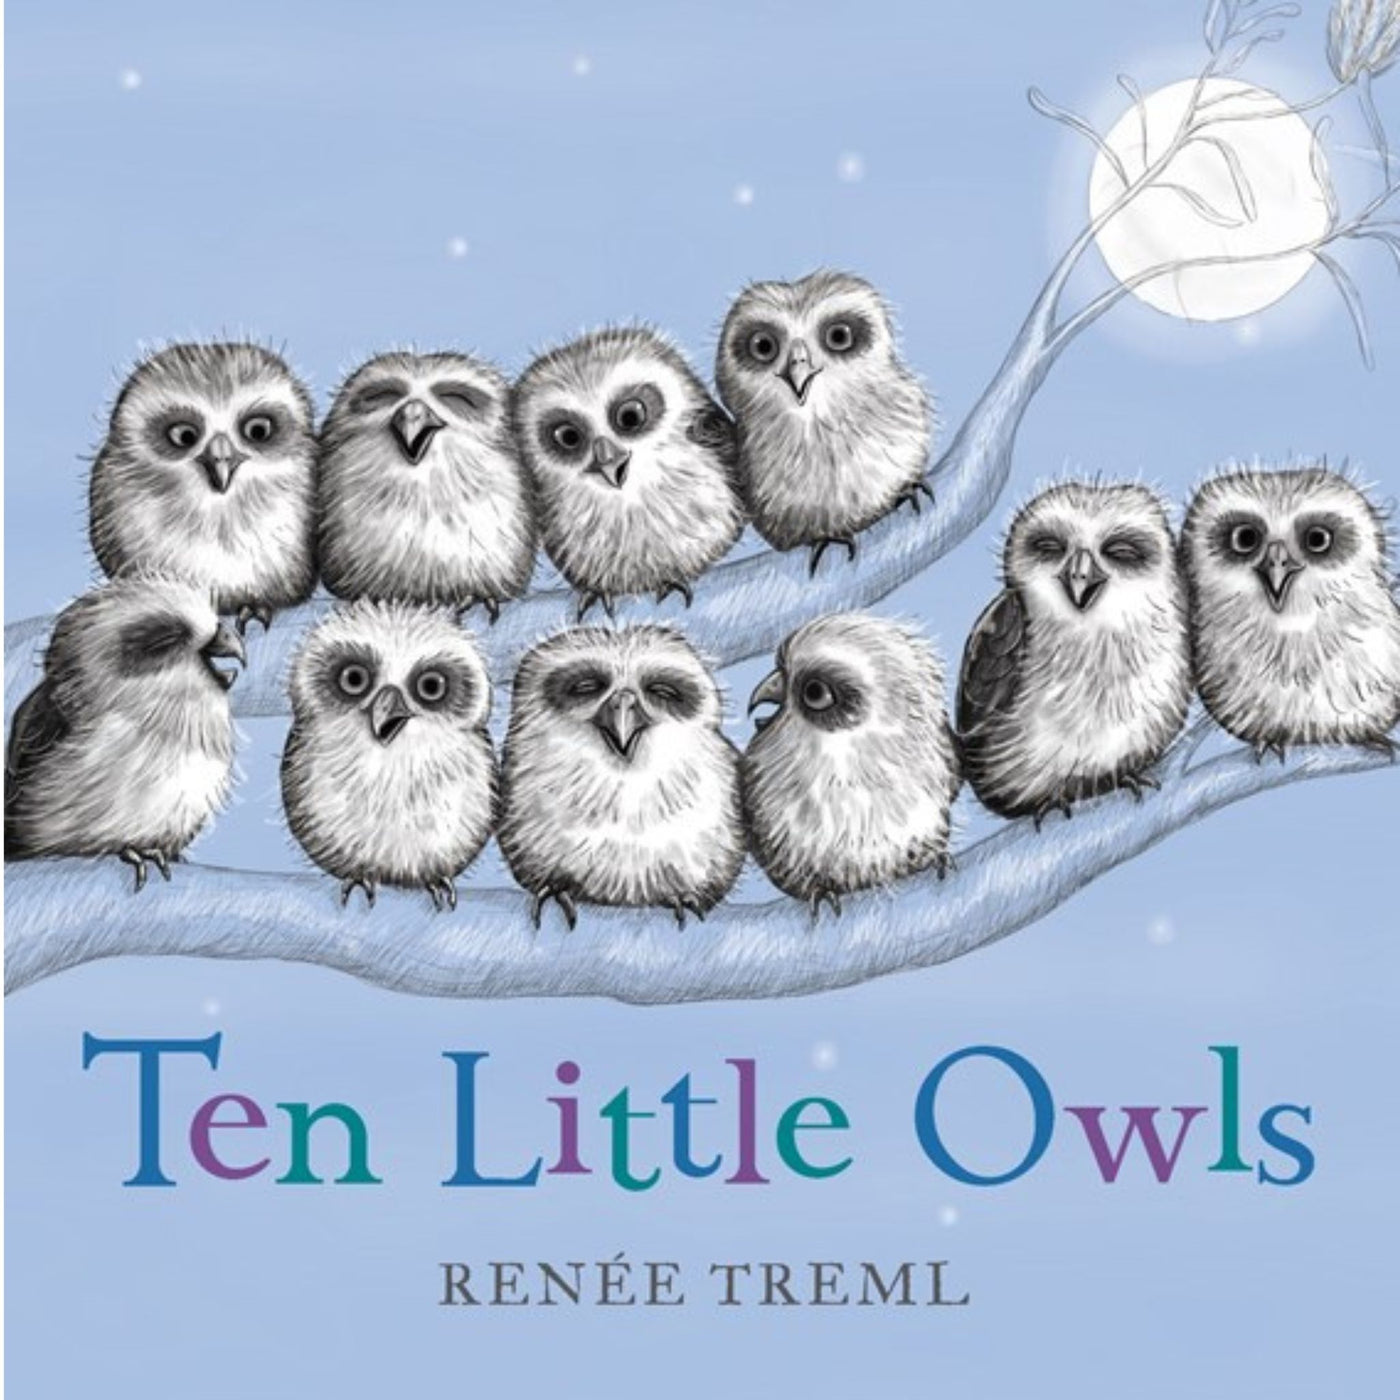 Ten Little Owls